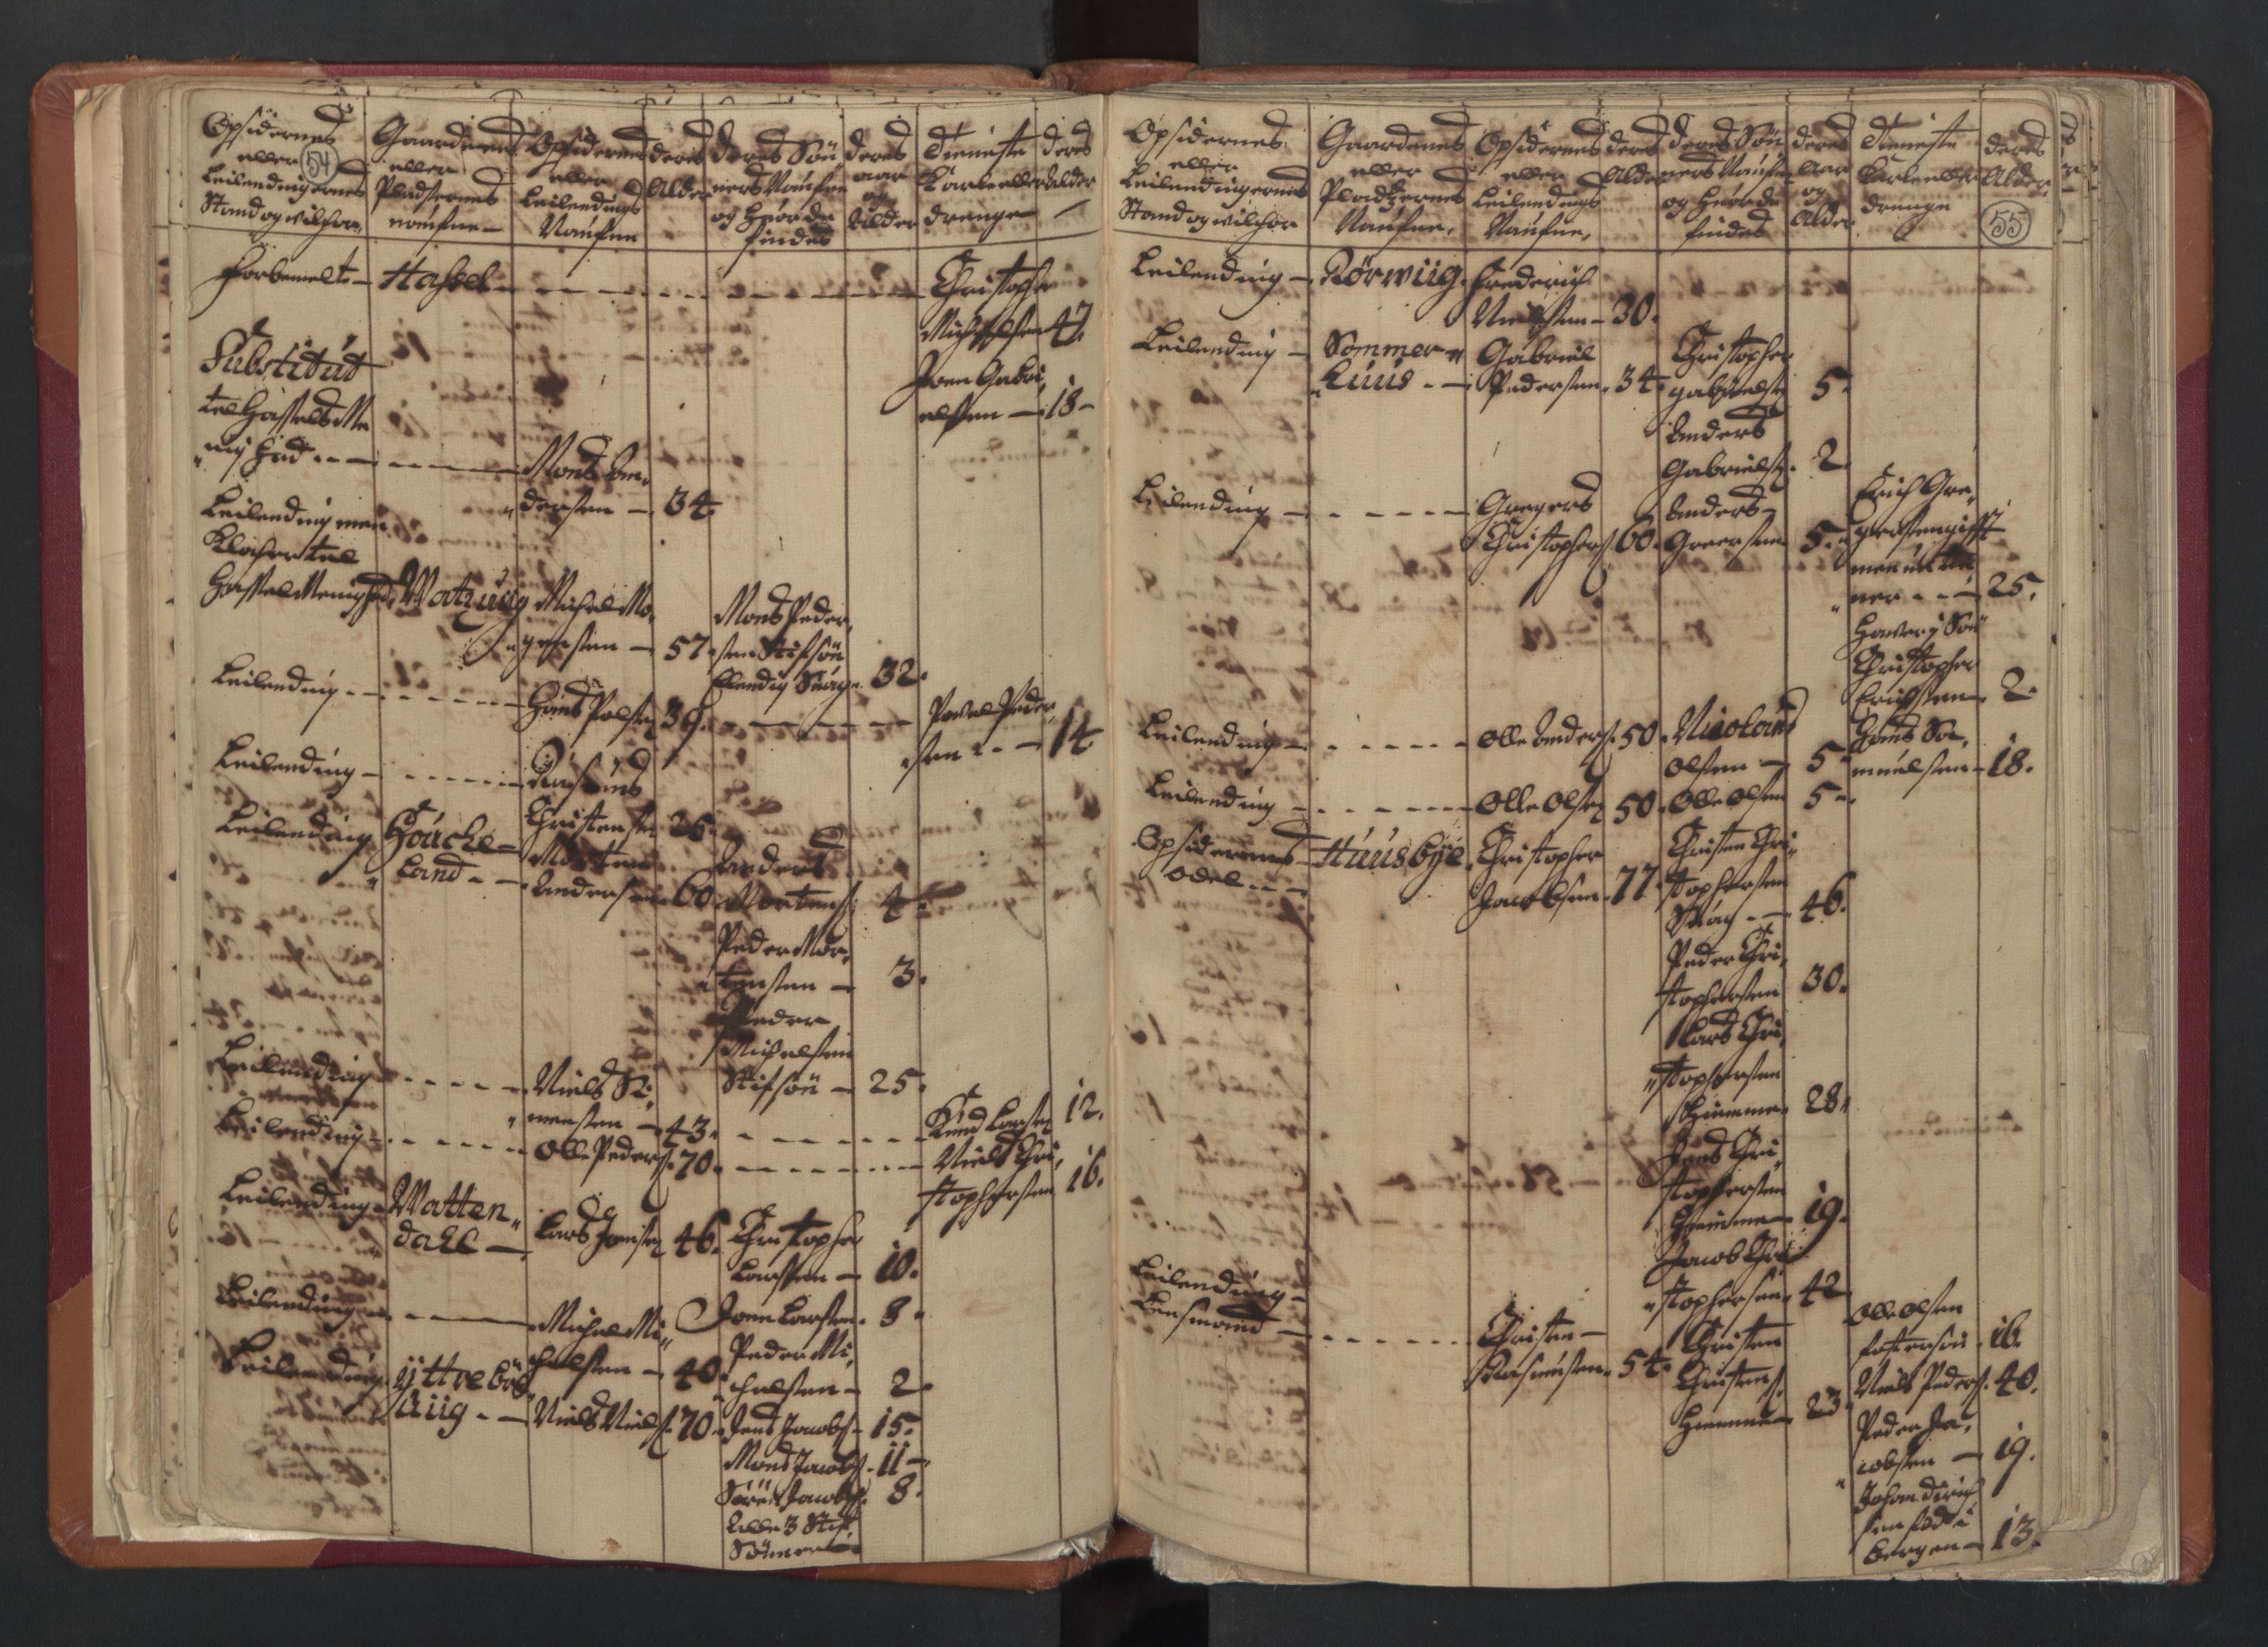 RA, Census (manntall) 1701, no. 18: Vesterålen, Andenes and Lofoten fogderi, 1701, p. 54-55